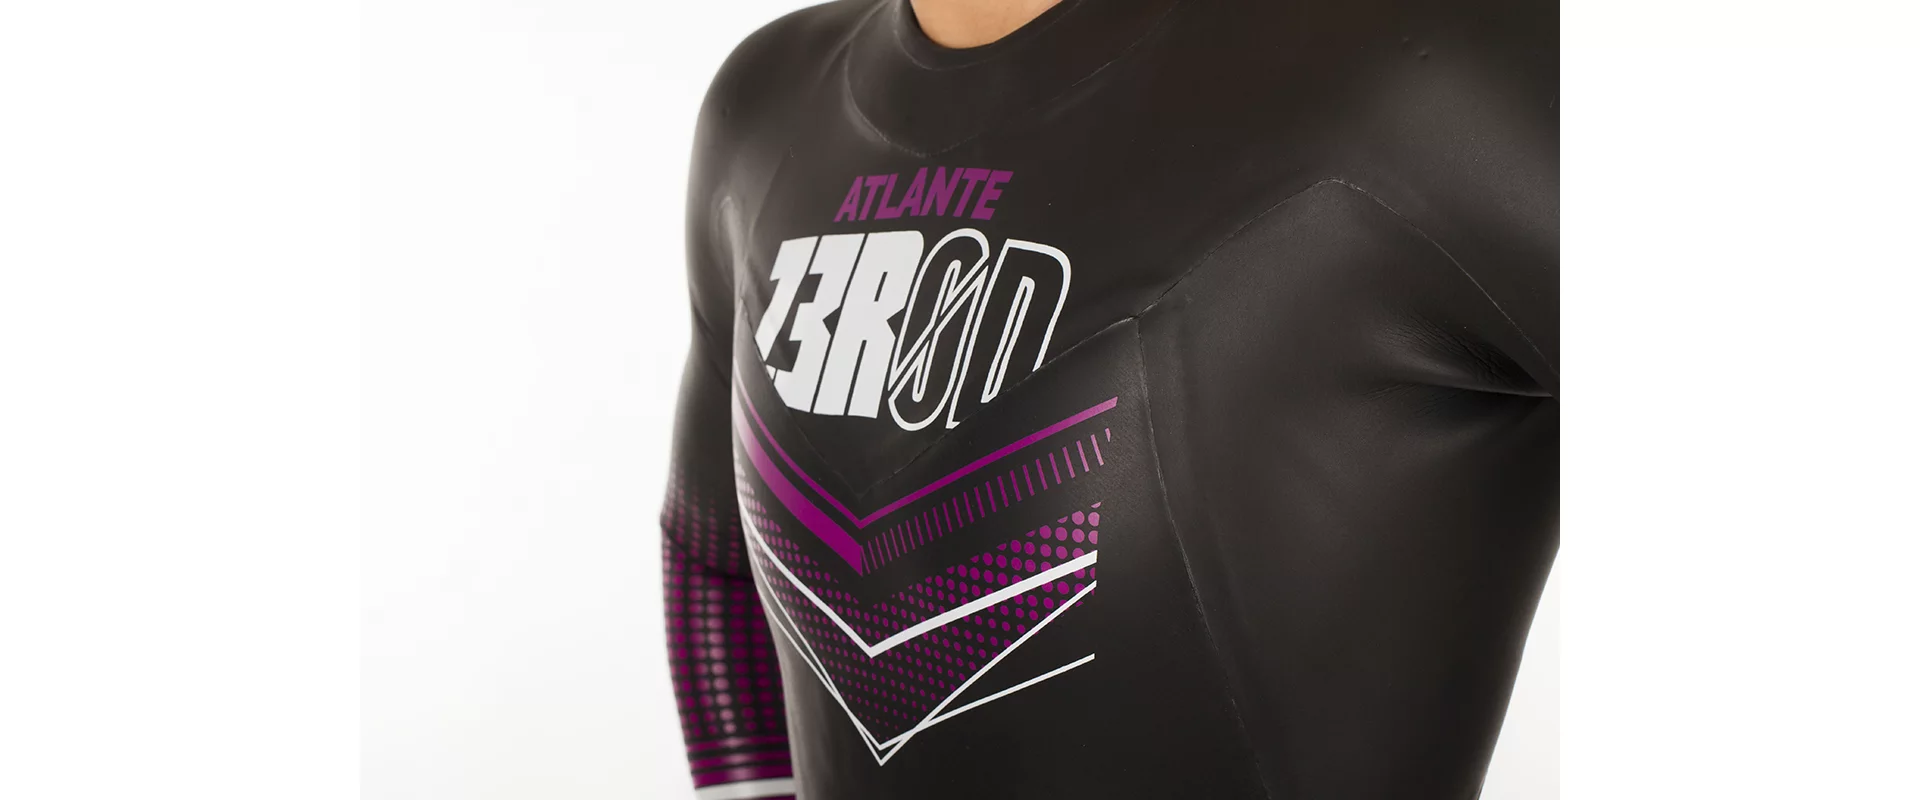 Z3R0D Atlante Wetsuit W / Женский гидрокостюм для триатлона и открытой воды Zerod фото 5